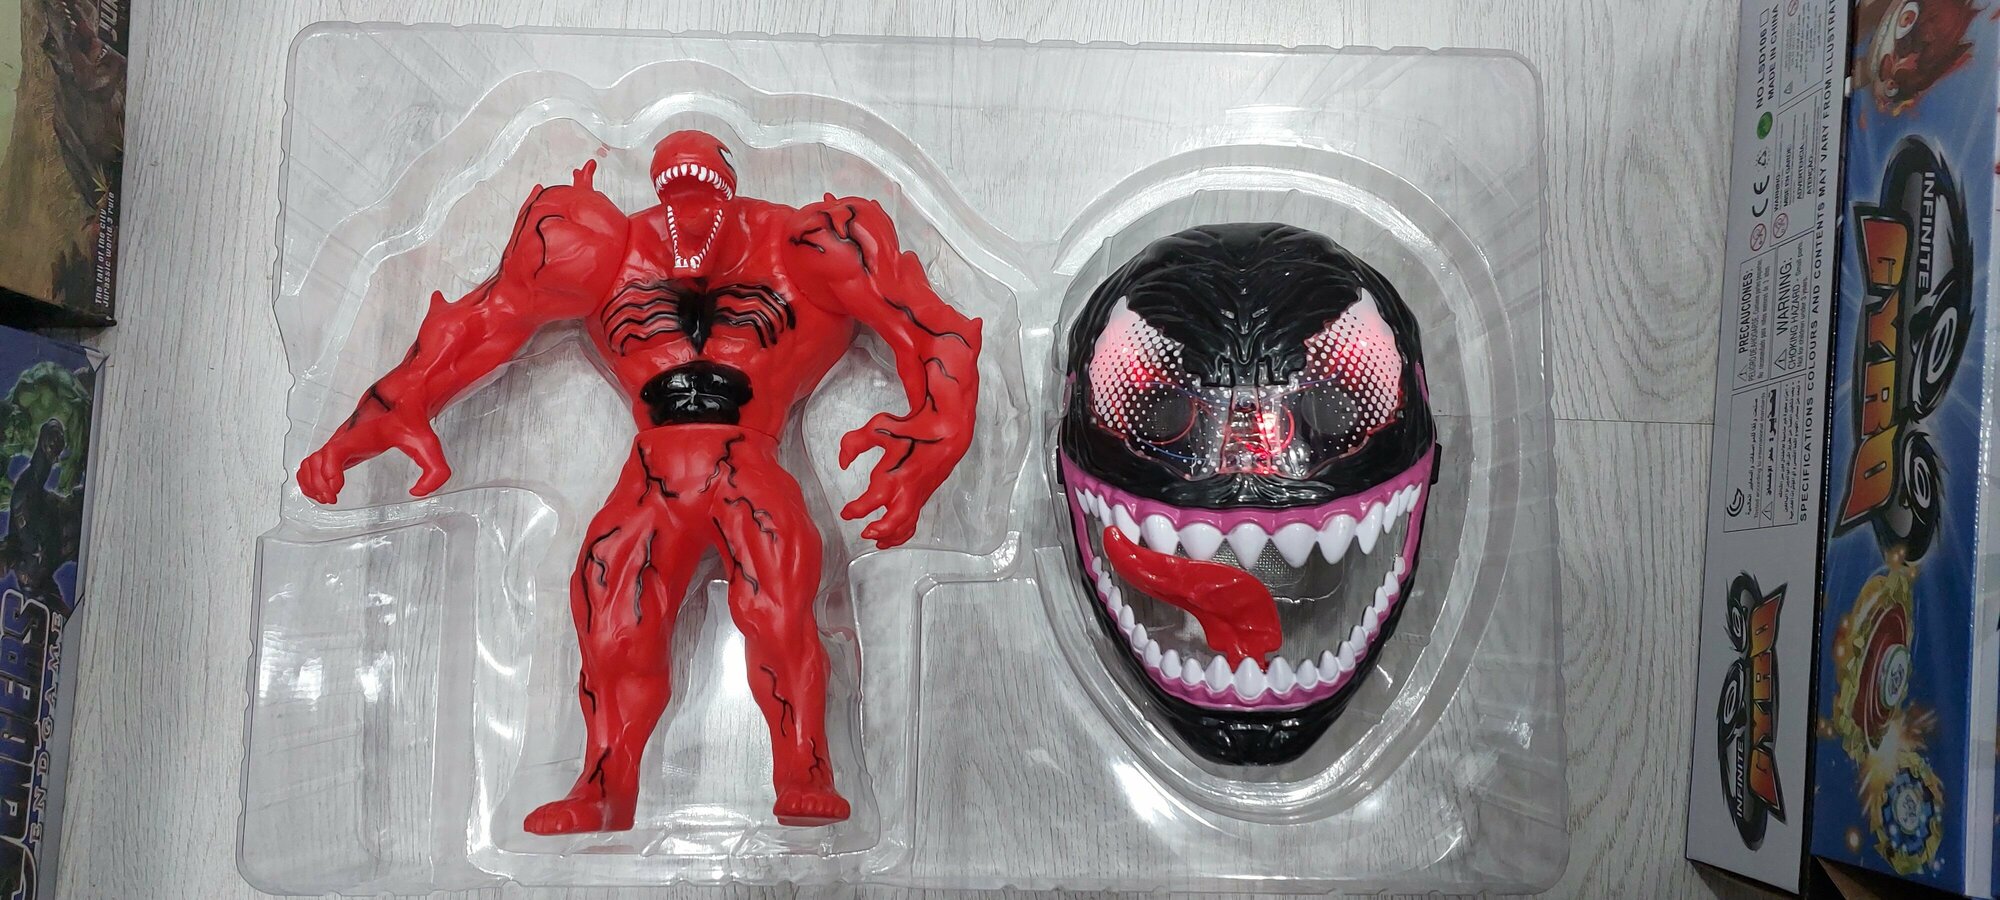 Веном - Venom игрушка-фигурка с маской со спецэффектами